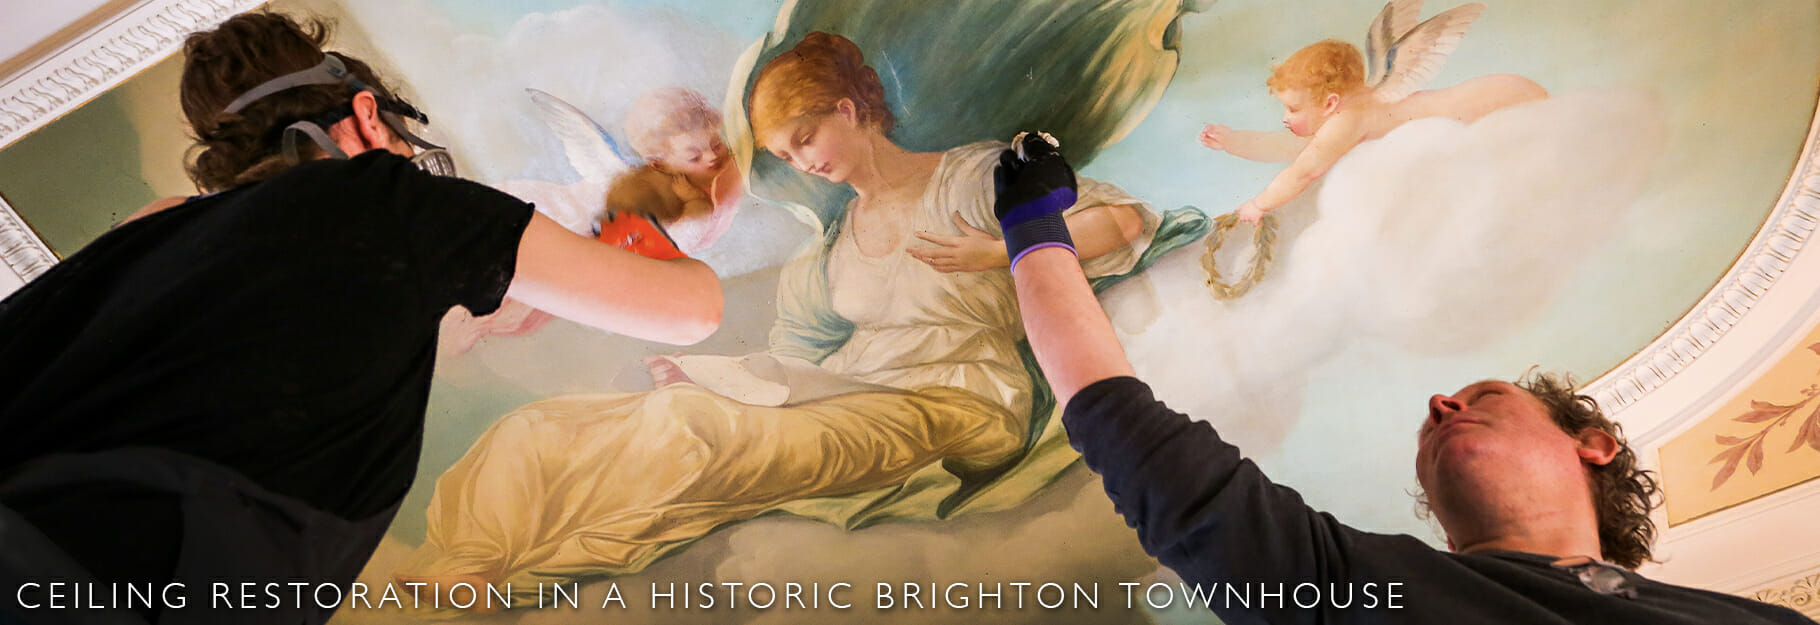 Historic Brighton ceiling restoration